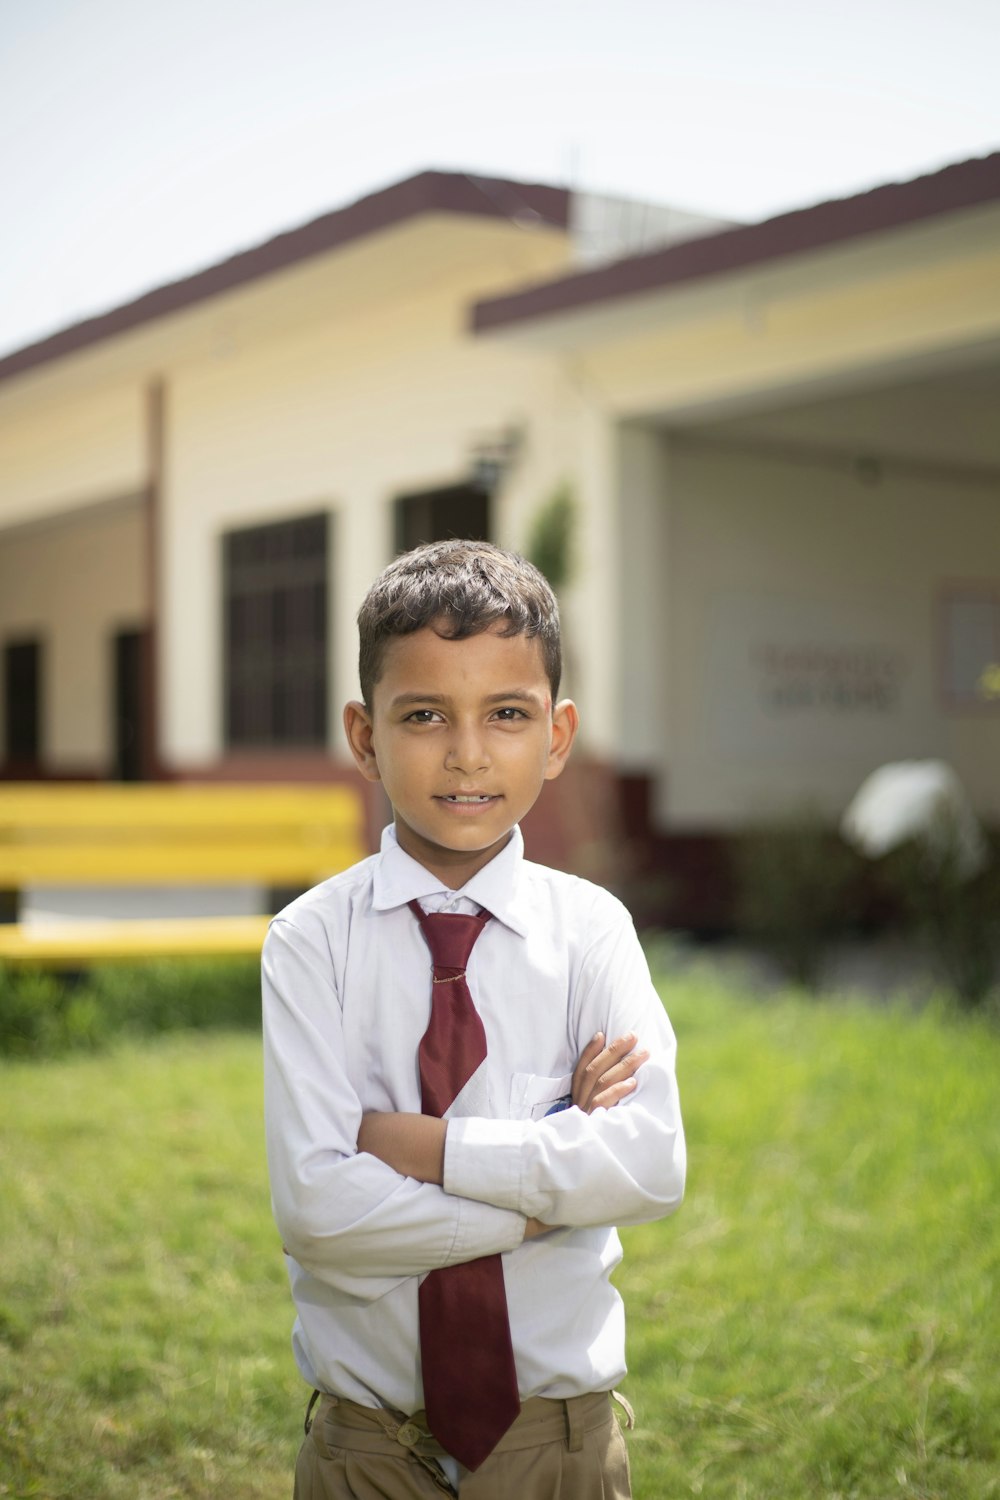 Ein kleiner Junge mit Krawatte steht vor einem Gebäude